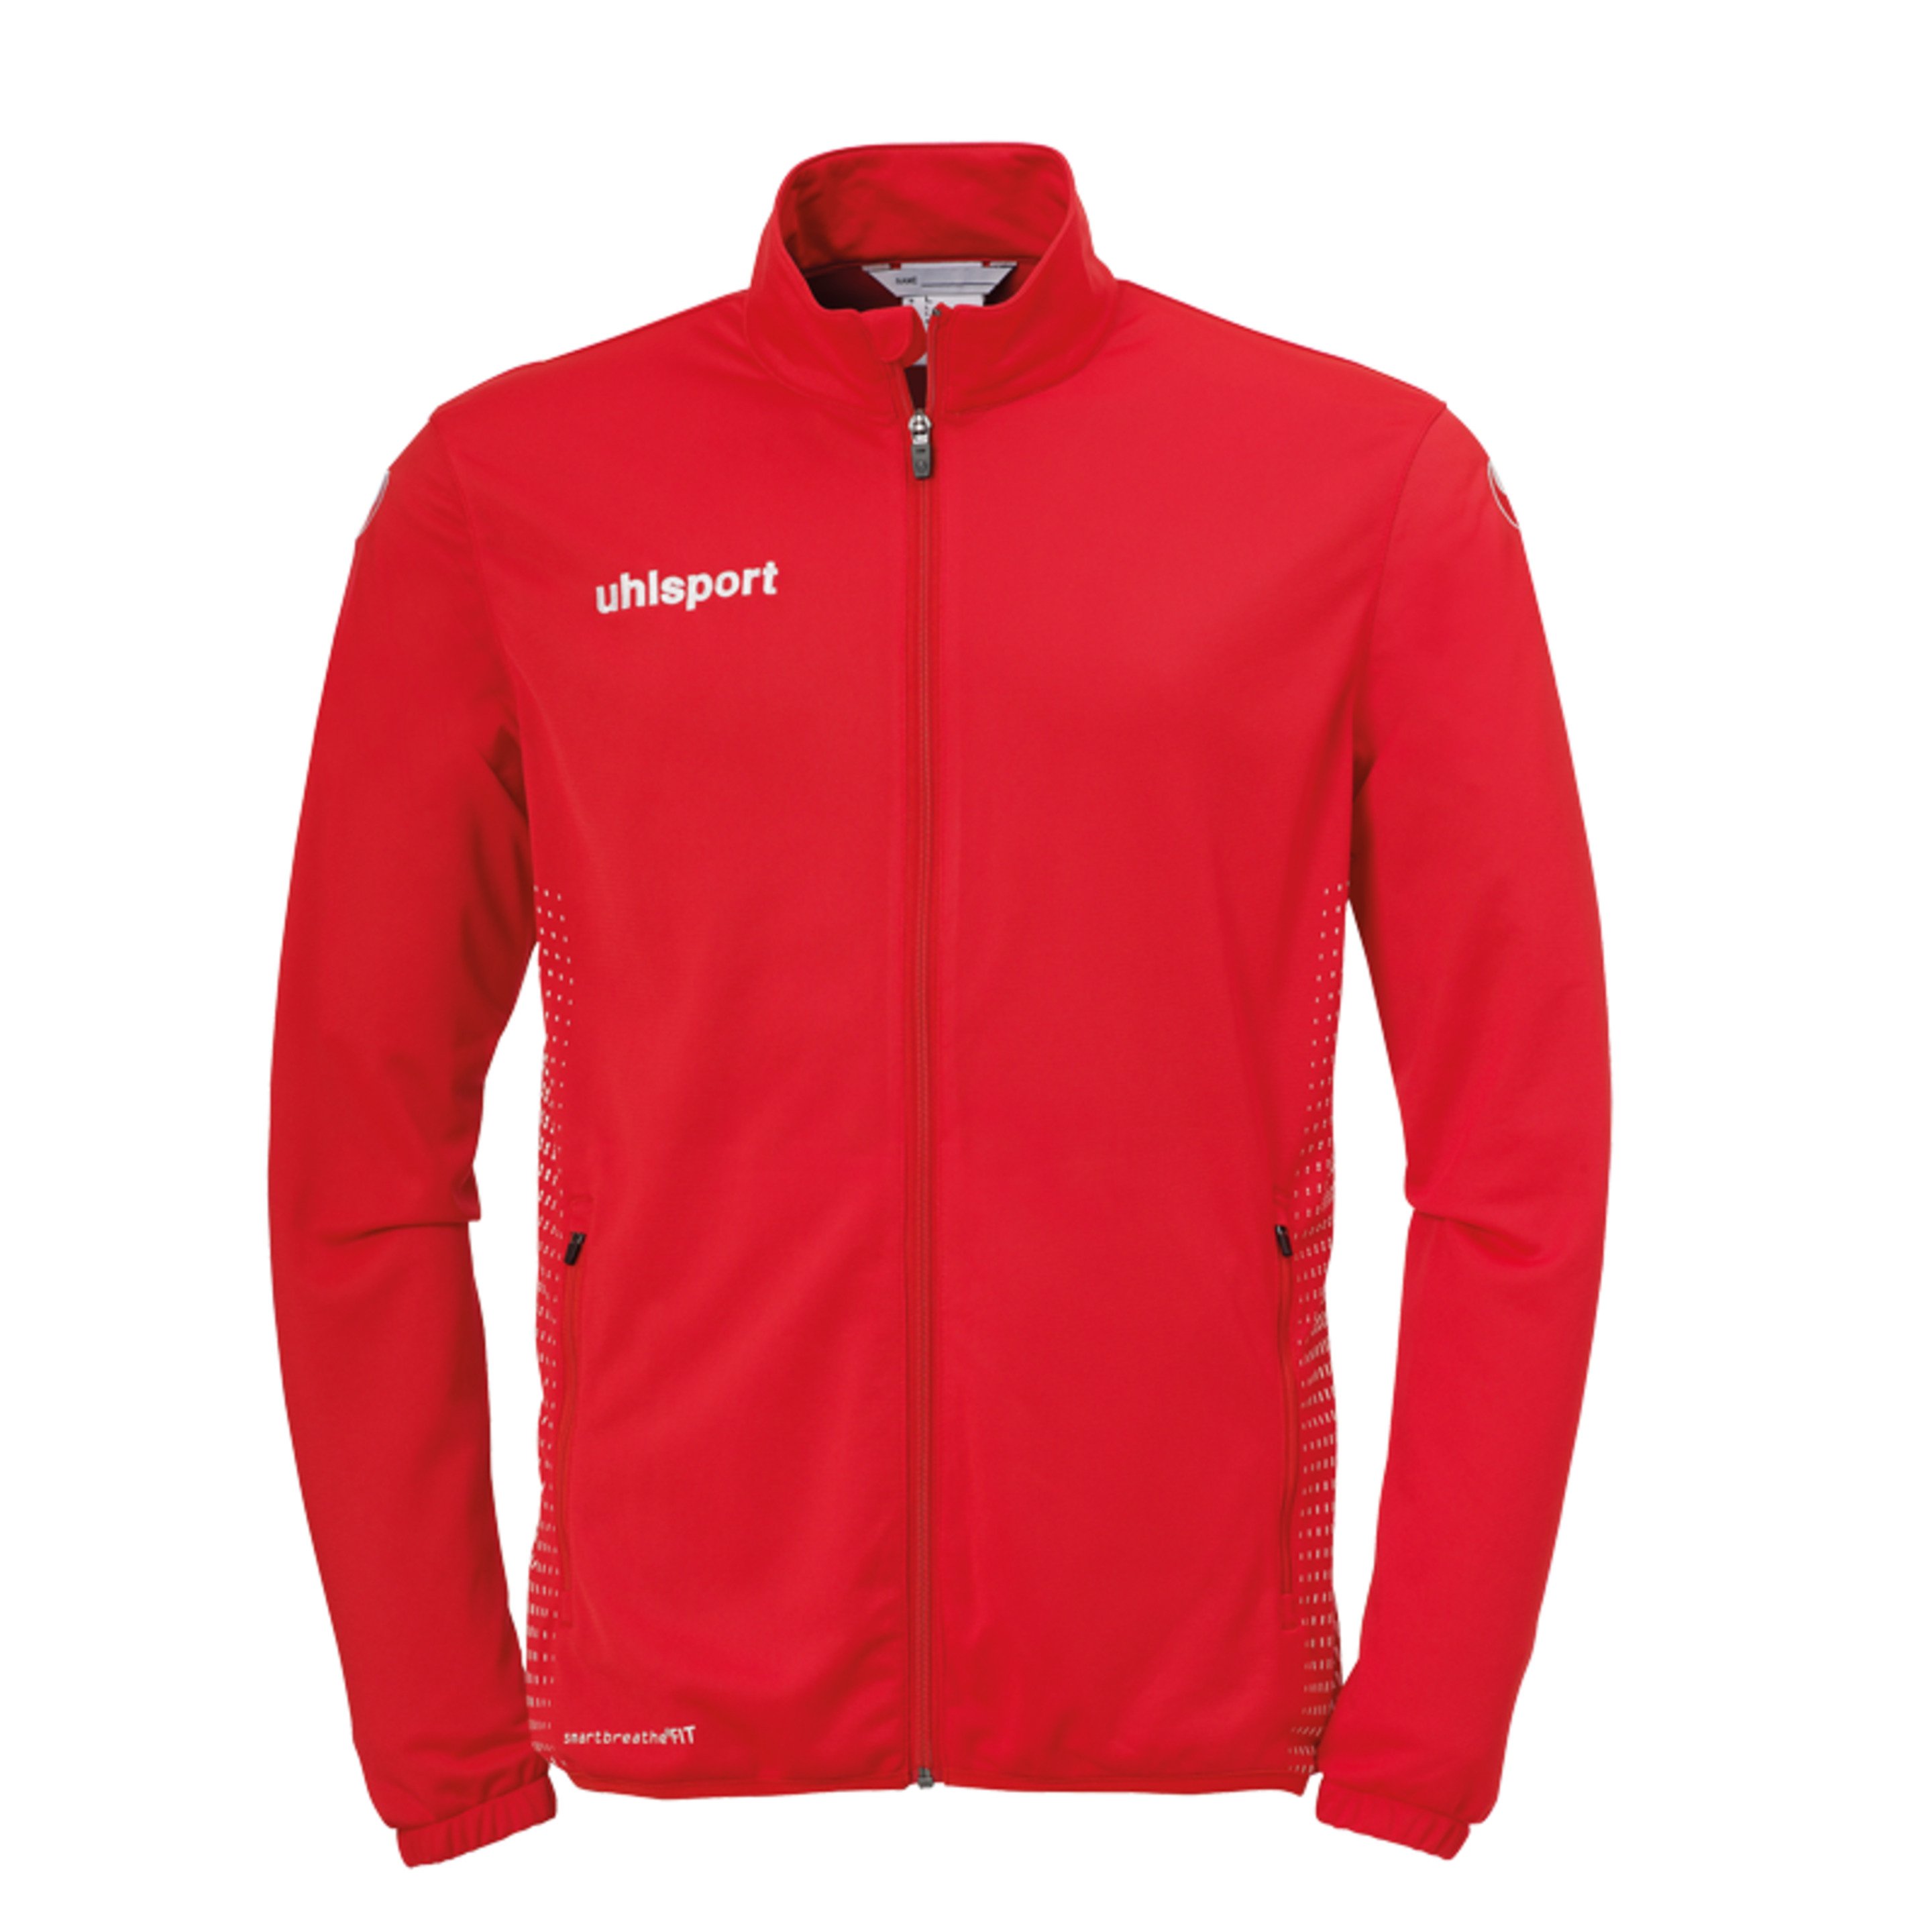 Score Classic Jacket Rojo/blanco Uhlsport